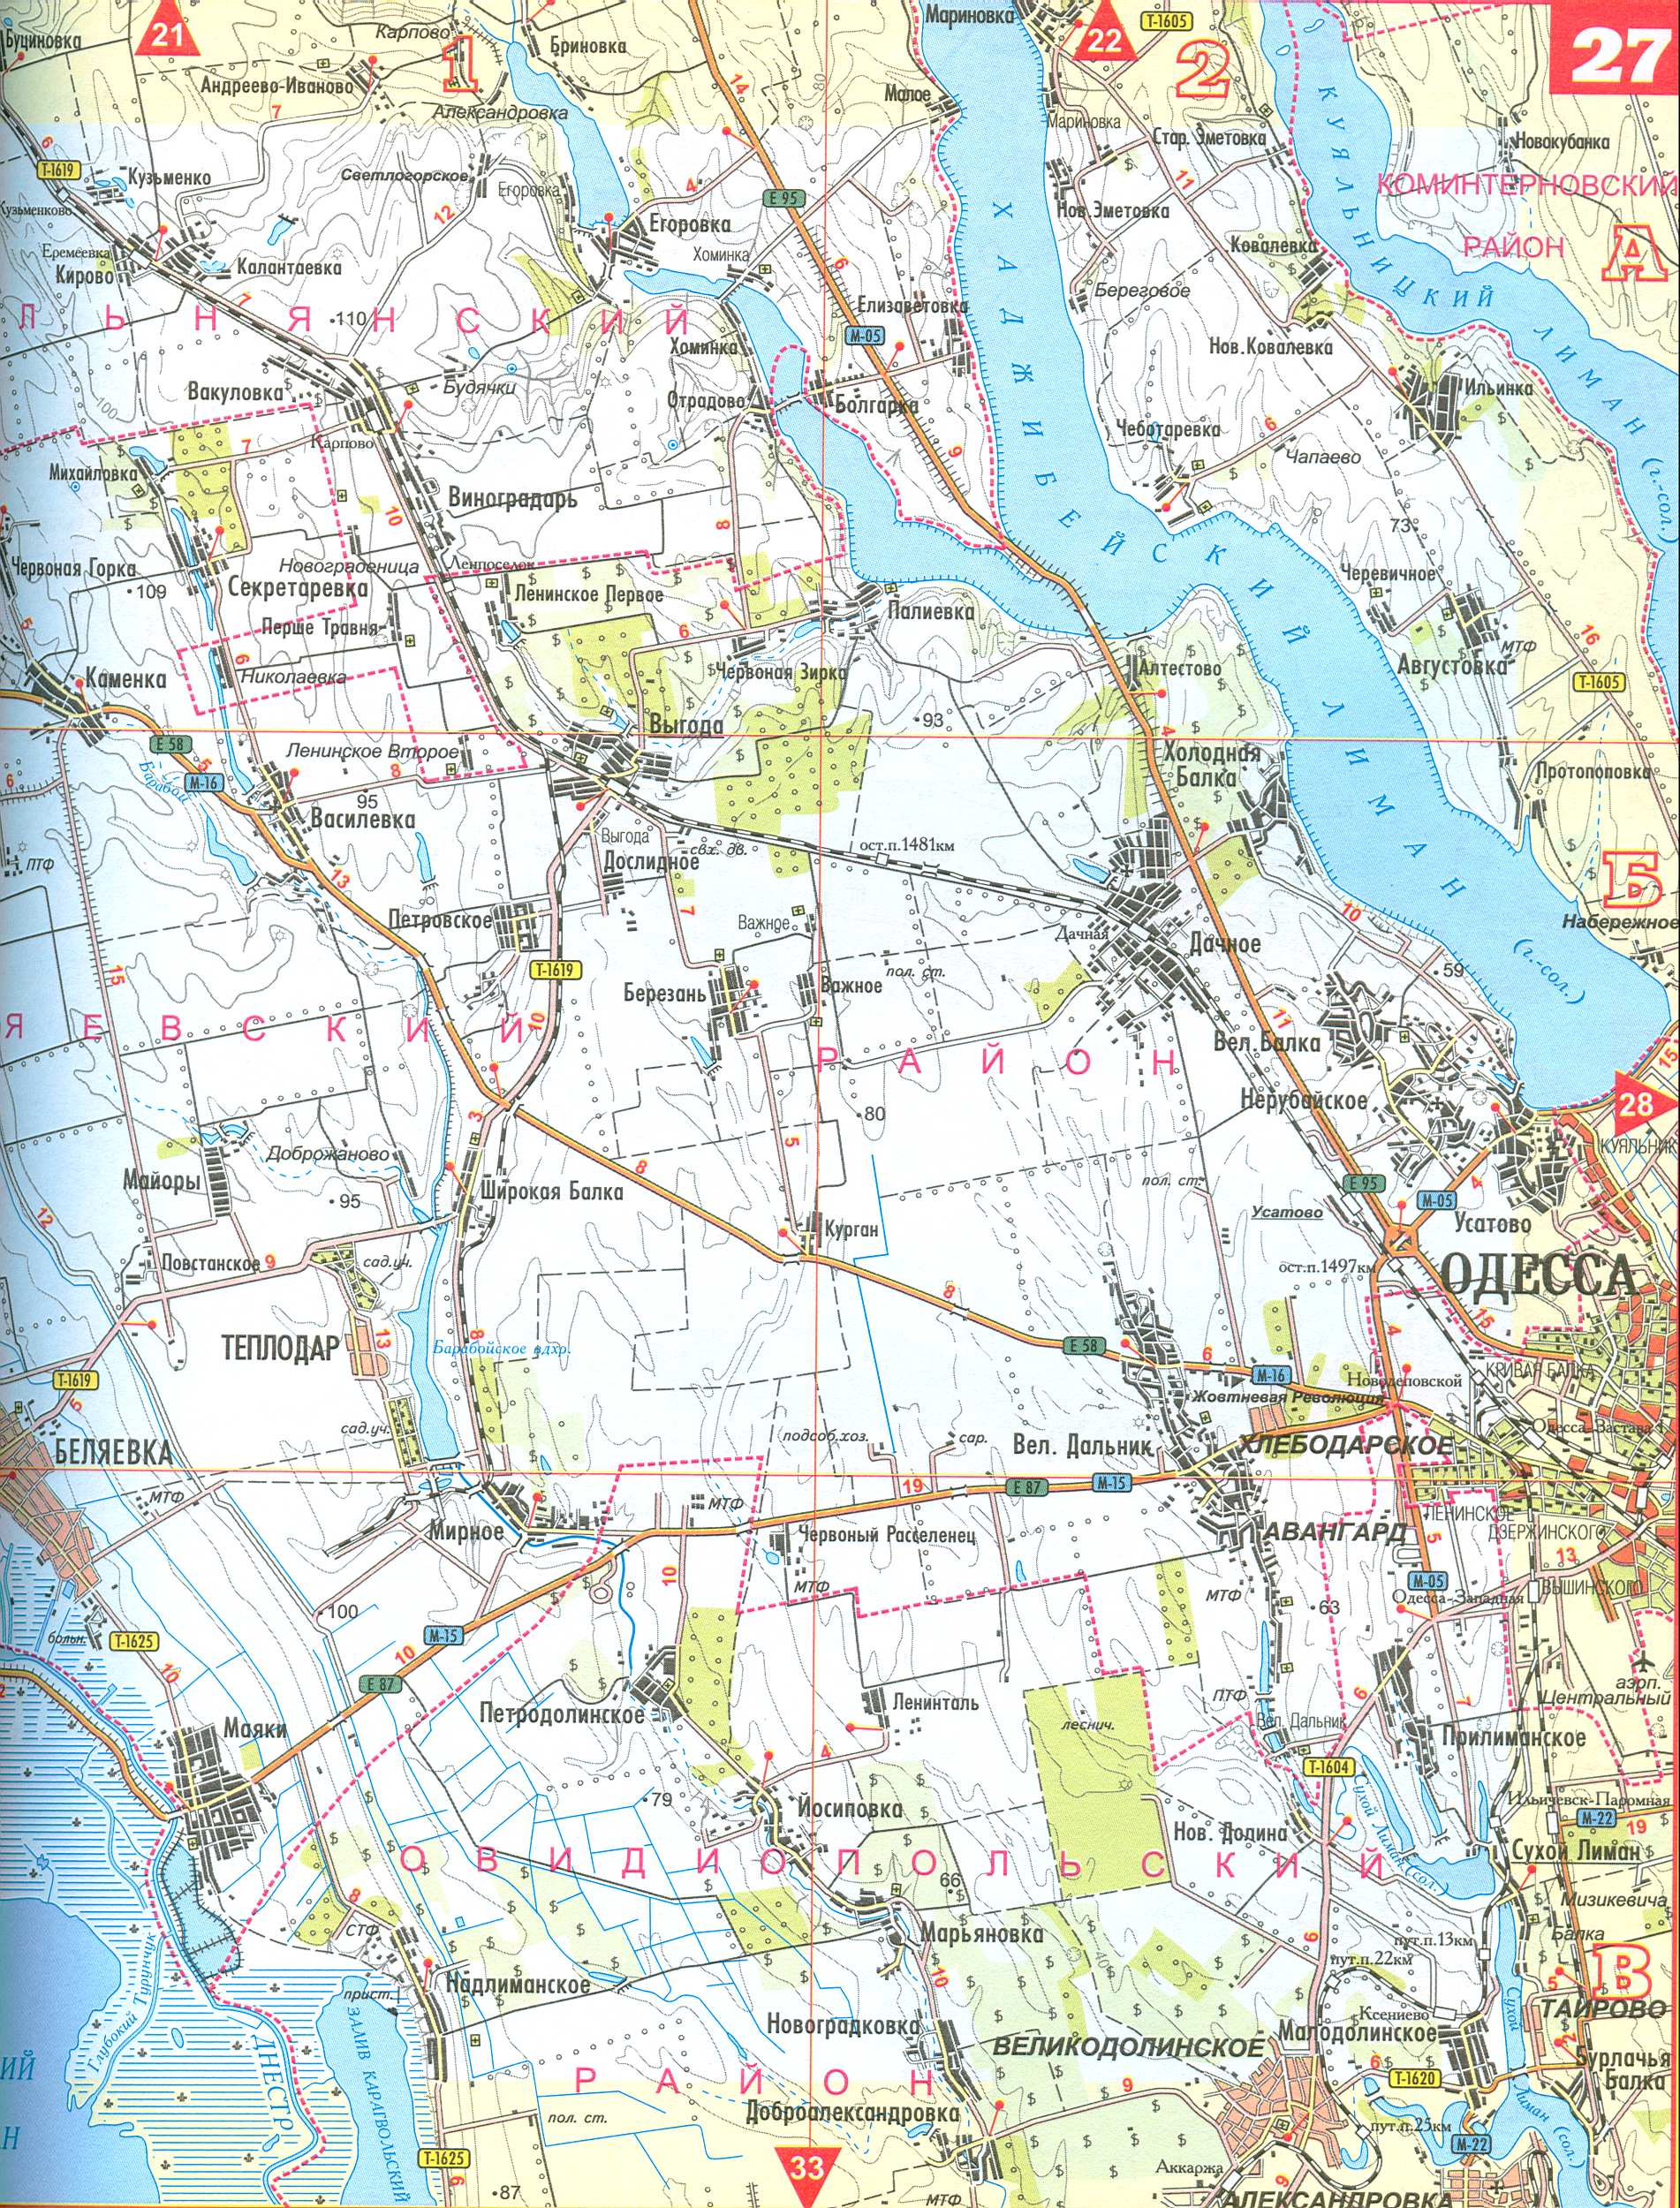 Schwarzmeerküste der Region Karte Odessa. Karte von der Schwarzmeerküste in der Nähe von Odessa 1cm = 2km, D0